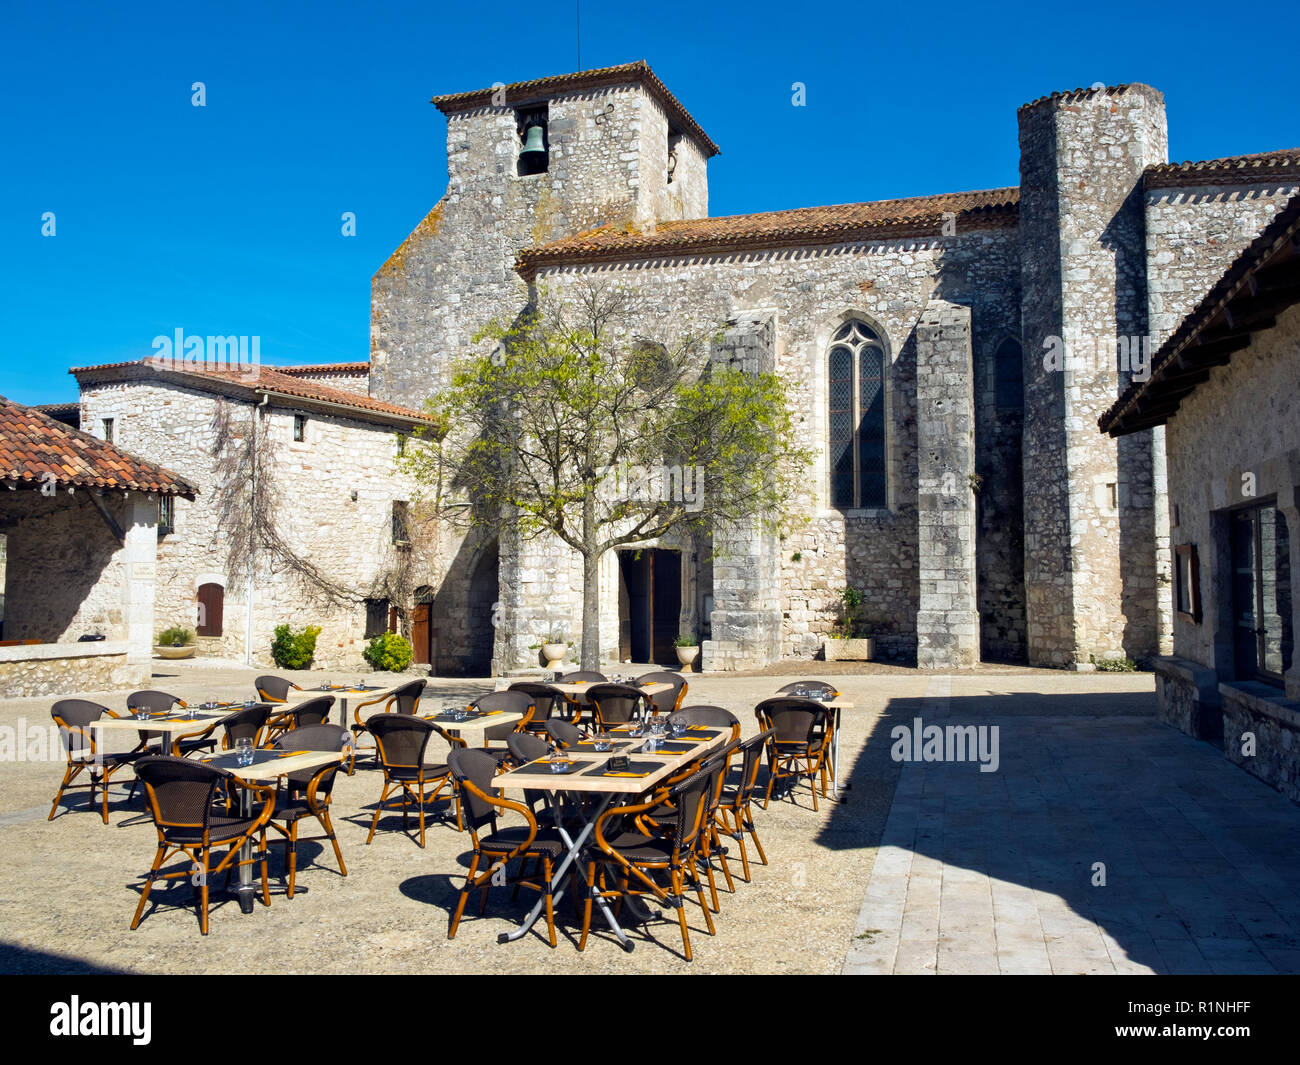 Restaurant Tische vorbereitet zur Mittagszeit auf dem Platz in Pujols, Lot-et-Garonne, Frankreich. Dieses historische Festungsstadt Hochburg ist nun ein Mitglied von "Les Plus beaux villages de France' Association. Stockfoto